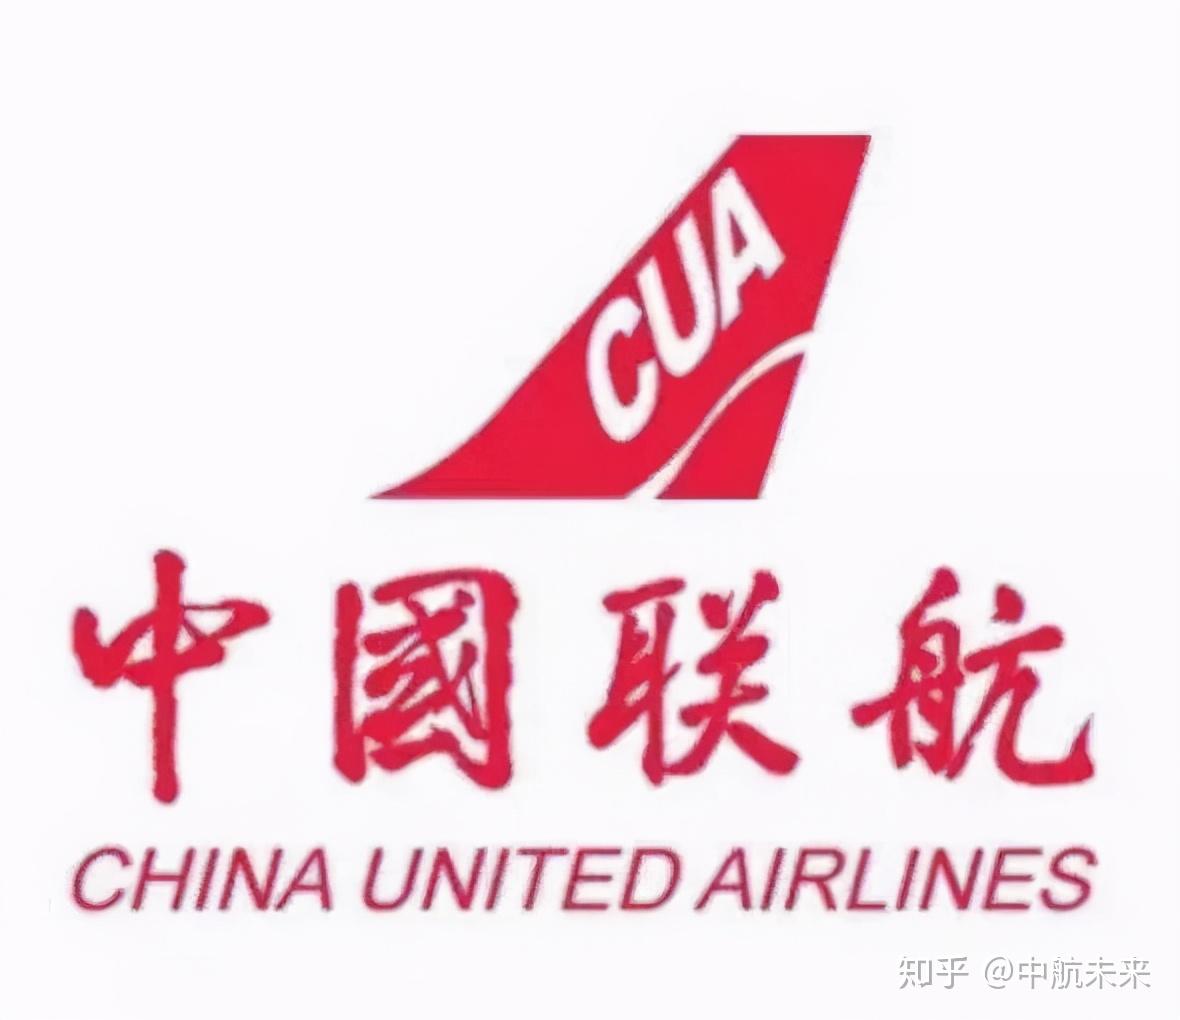 上海航空767客机即将退役 结束24年服务生涯 - 模拟飞行中心,模拟飞行,模拟飞行聊飞学,模拟飞行论坛 - FSCenter